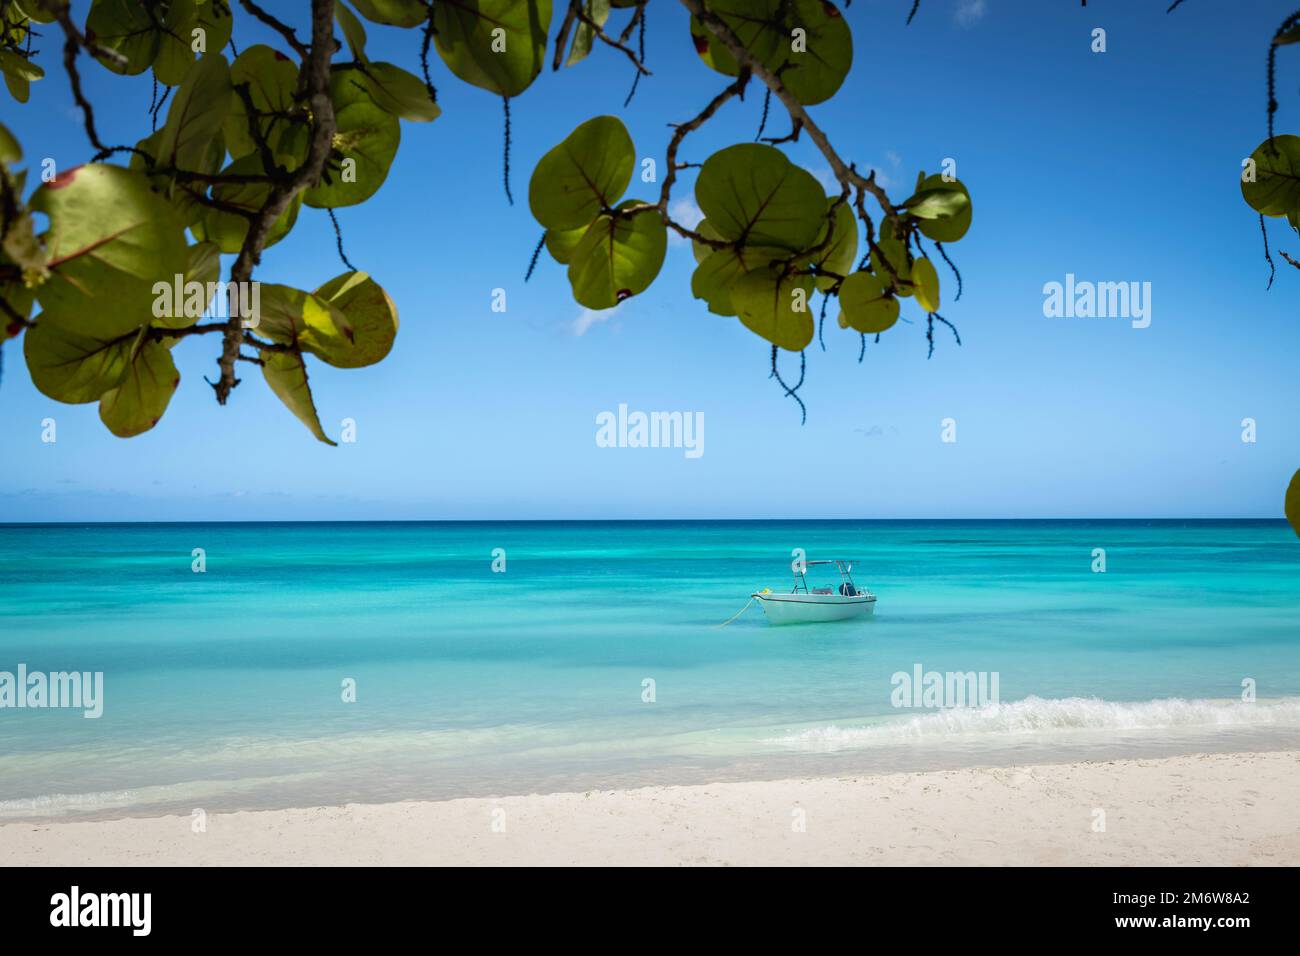 Paradis tropical, plage de sable dans les caraïbes Saona Island, Punta Cana, Dominicaine Banque D'Images